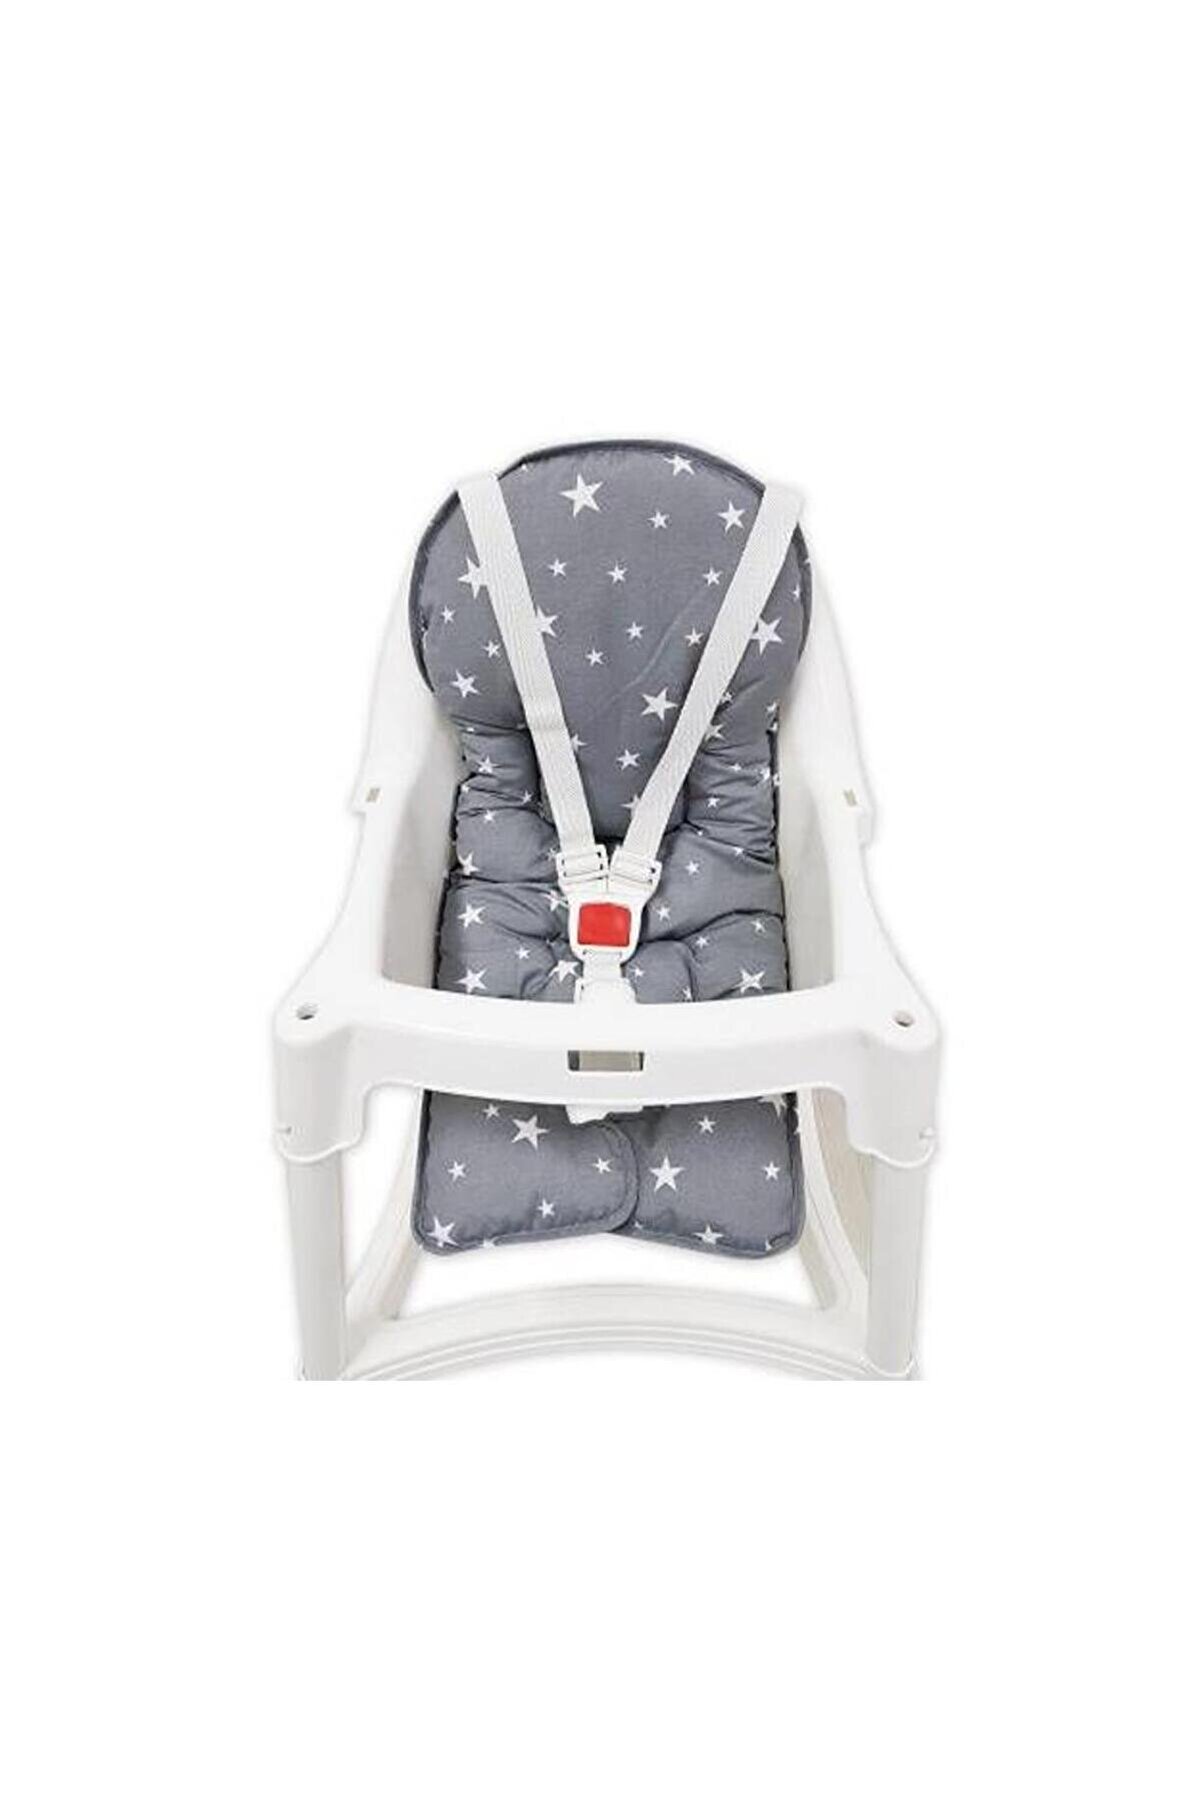 Sevi Bebe Mama Sandalyesi Minderi Art-150 Gri Yıldız